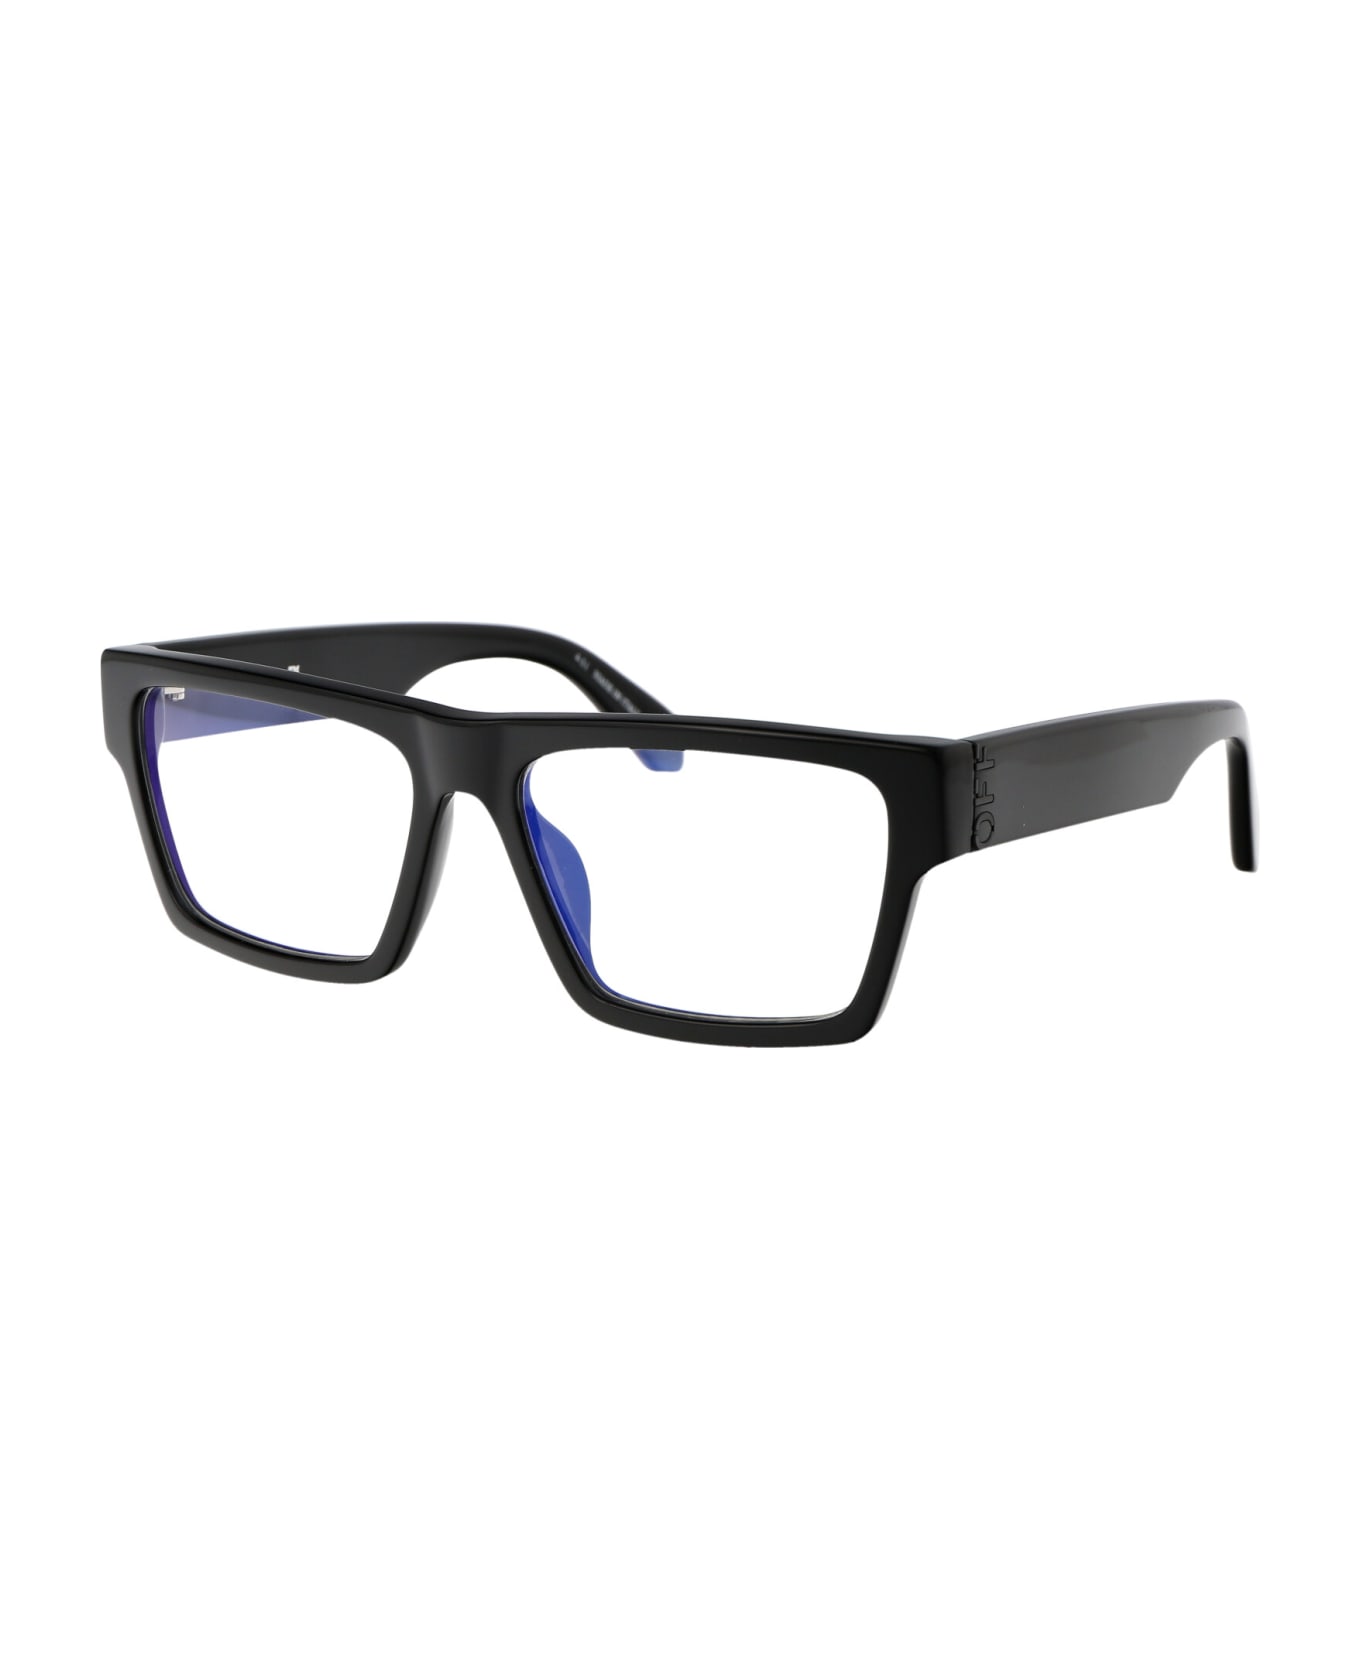 Off-White Optical Style 46 Glasses - 1000 BLACK アイウェア